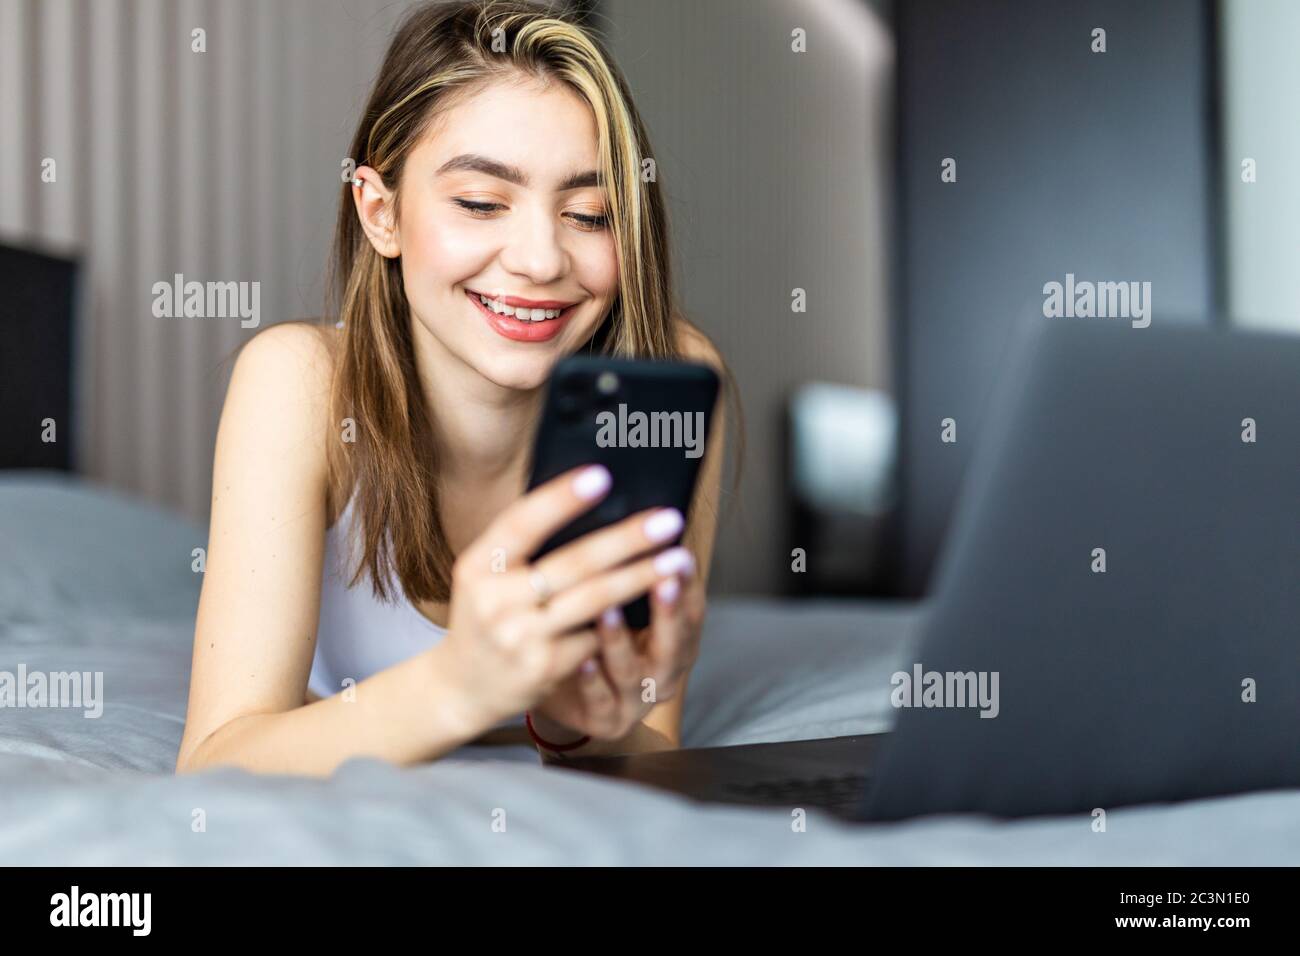 Une belle femme souriante, couchée sur le lit près de l'ordinateur portable et tapant un message sur son téléphone. Banque D'Images